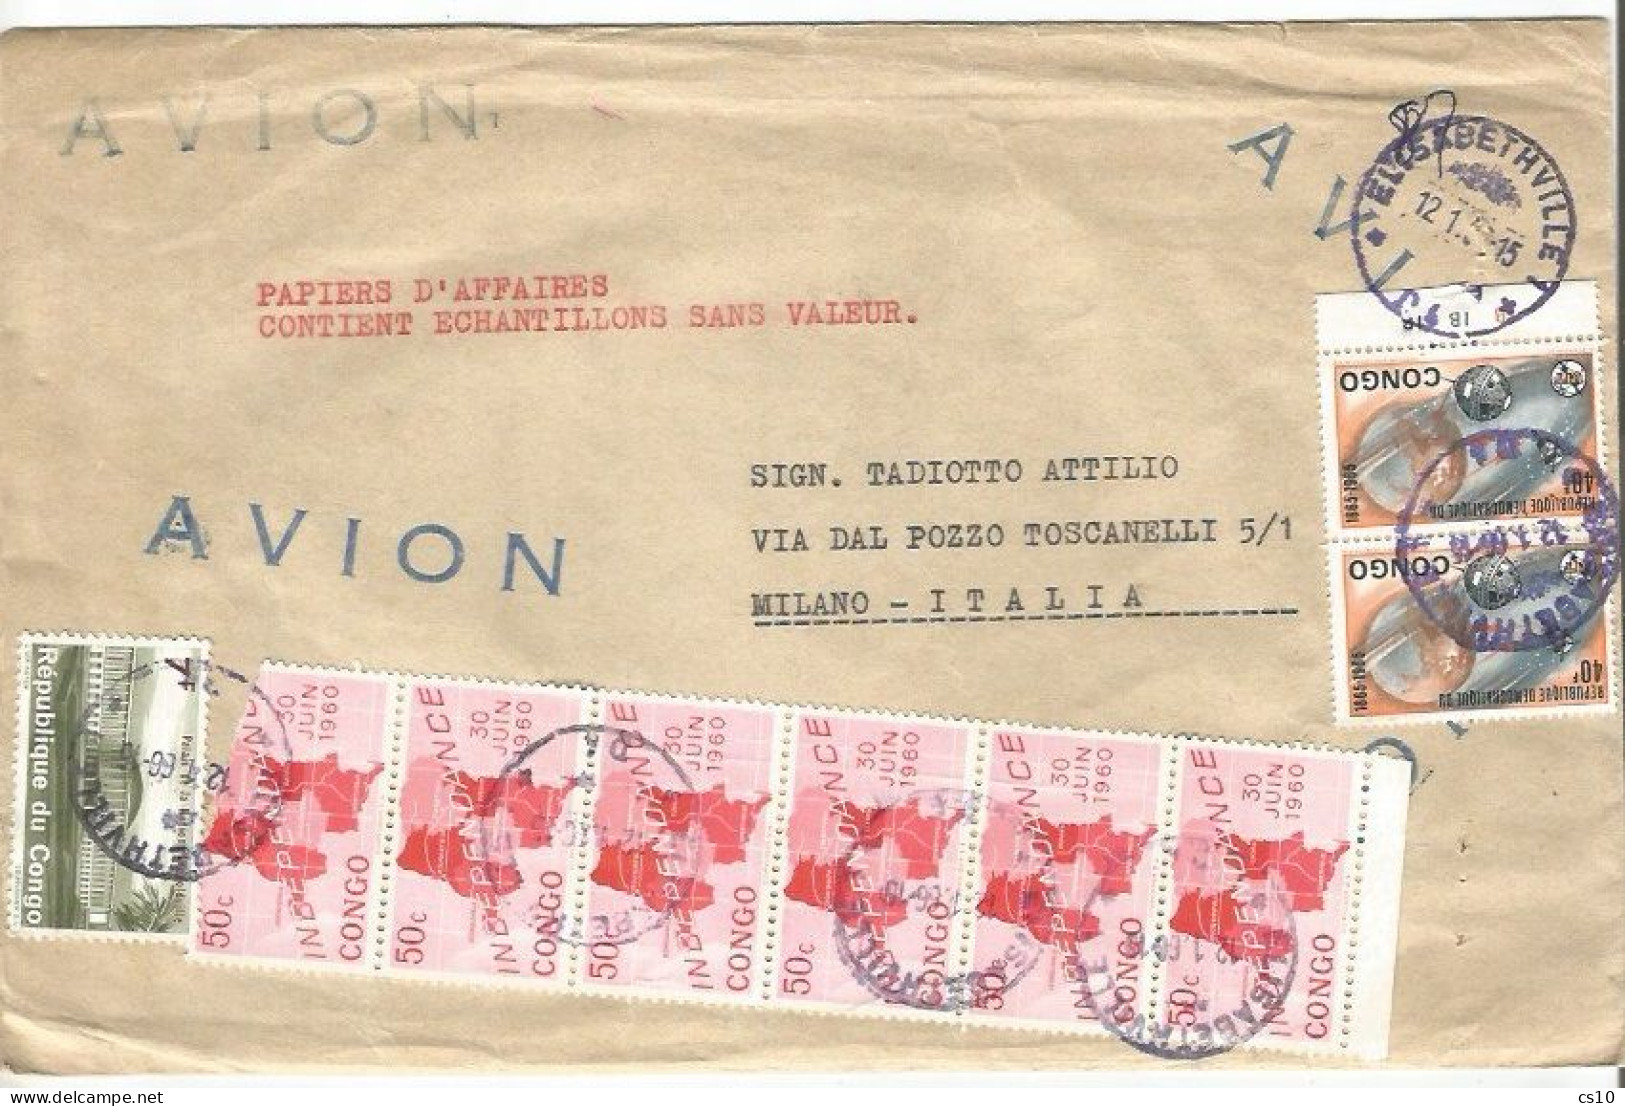 Congo Papier D'affaires Echantillons Sans Valeur Airmail Cover Elisabethville 12jan1966 X Italie Avec 9tps Tarif F.90 - Covers & Documents